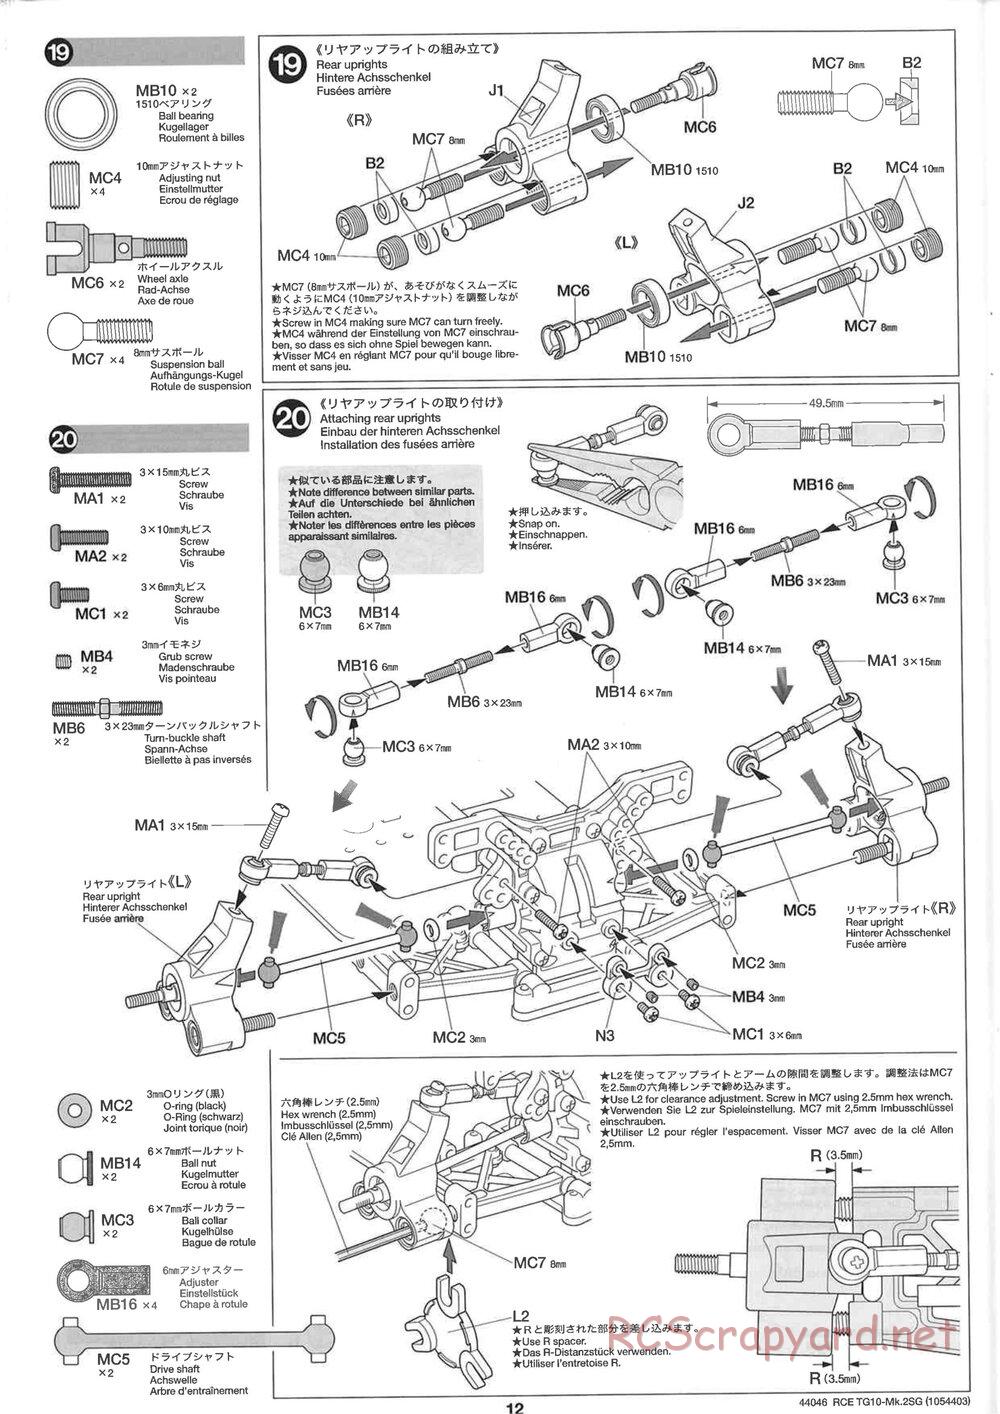 Tamiya - TG10 Mk.2SG Chassis - Manual - Page 12